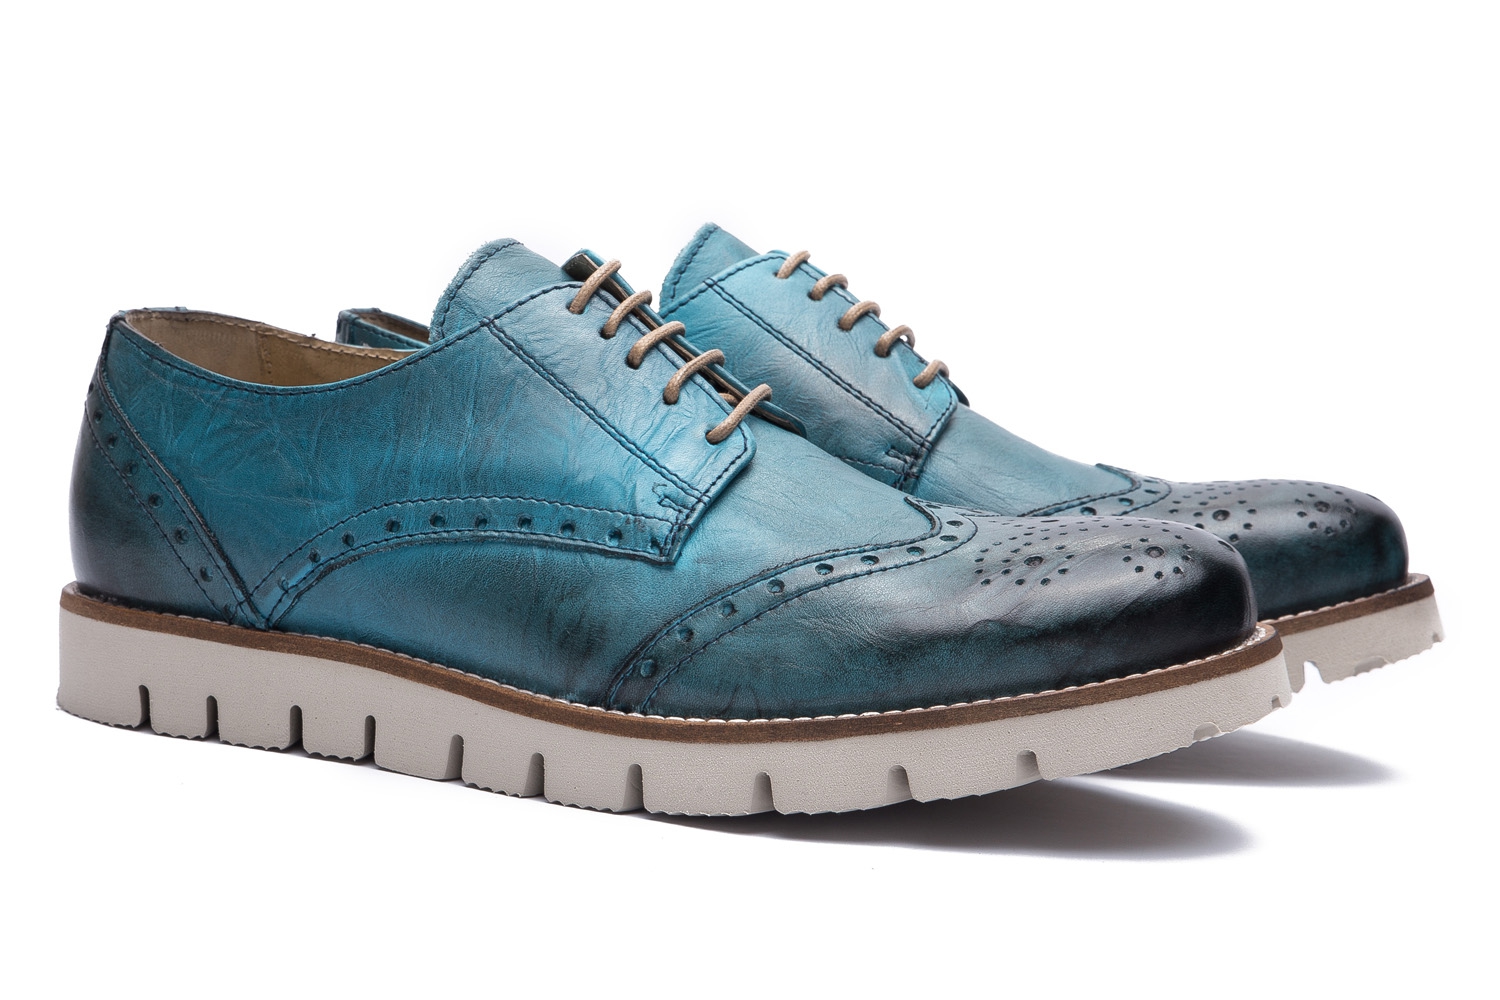 Pantofi albastri piele naturala - Bigotti.ro - VBPFSRPBZ08299999